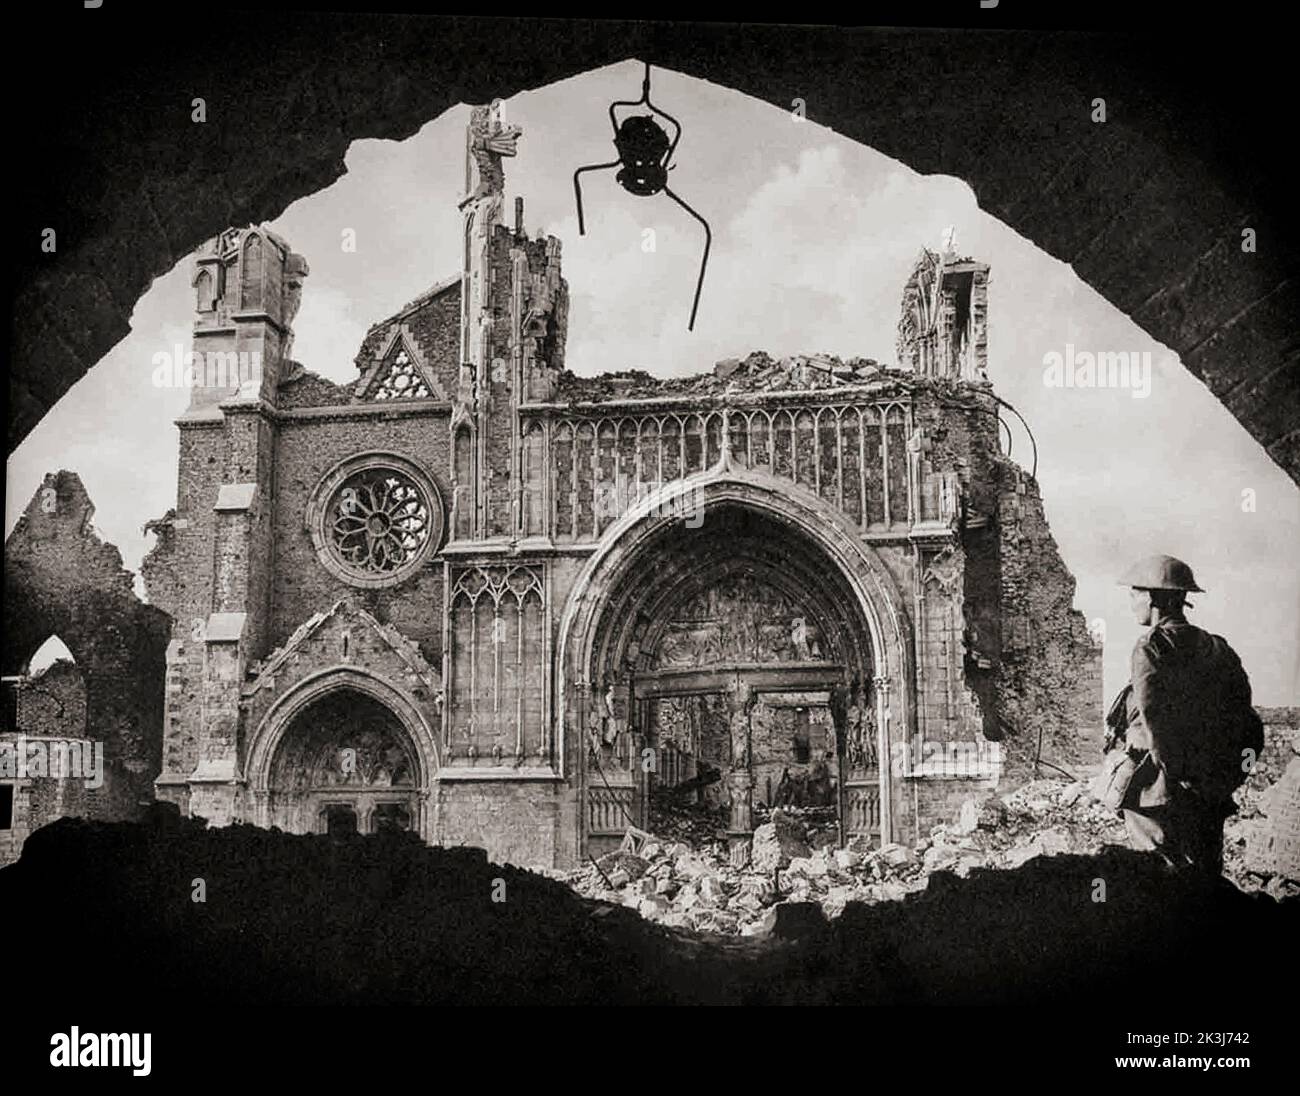 Un soldat arpentage une église en ruines pendant la troisième bataille d'Ypres en 1917. Photographie de Frank Hurley (1885 1962) un photographe australien. Banque D'Images